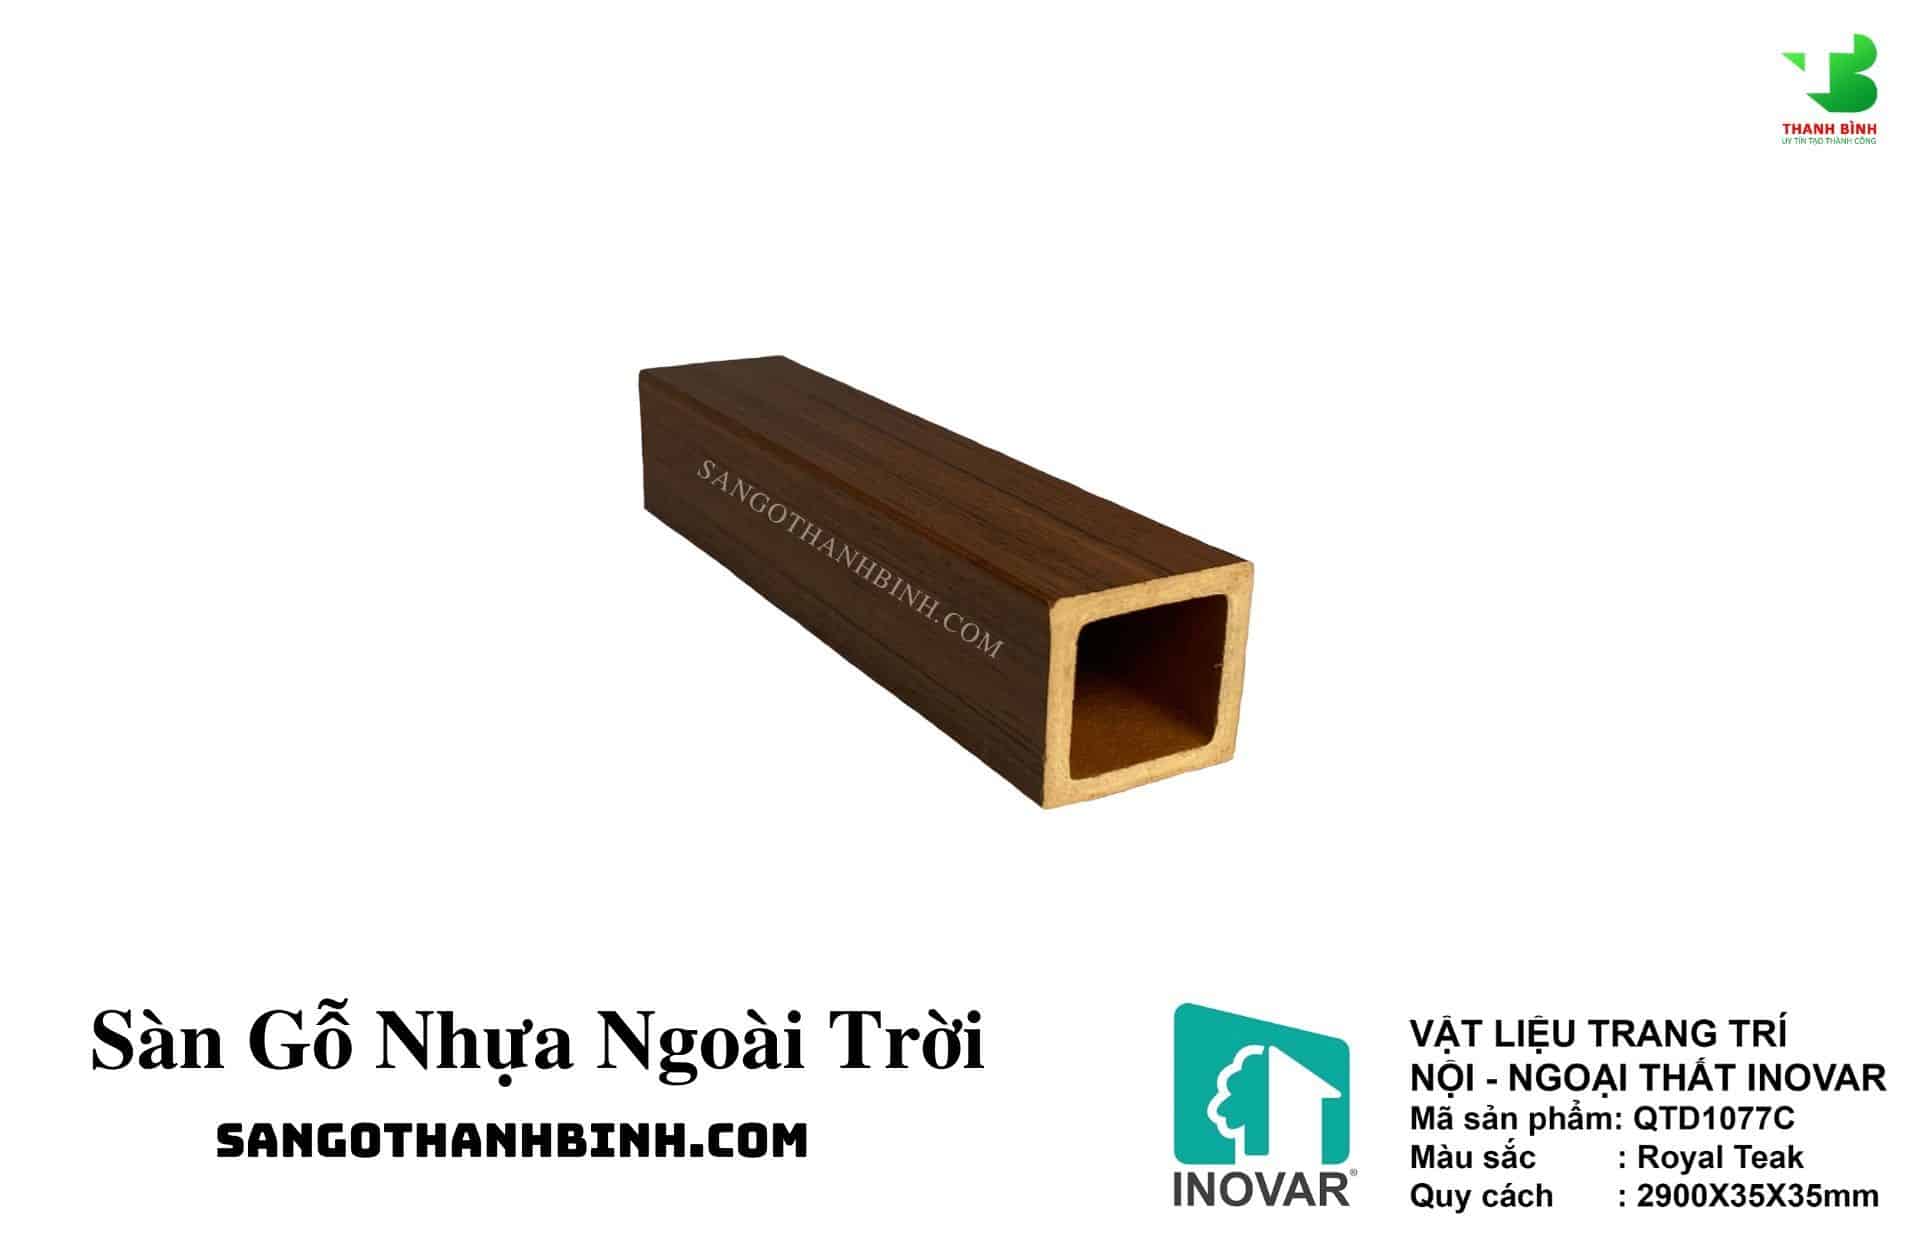 San Go Nhua Ngoai Troi Trang Tri Noi Ngoai That Ma QTD 1077C